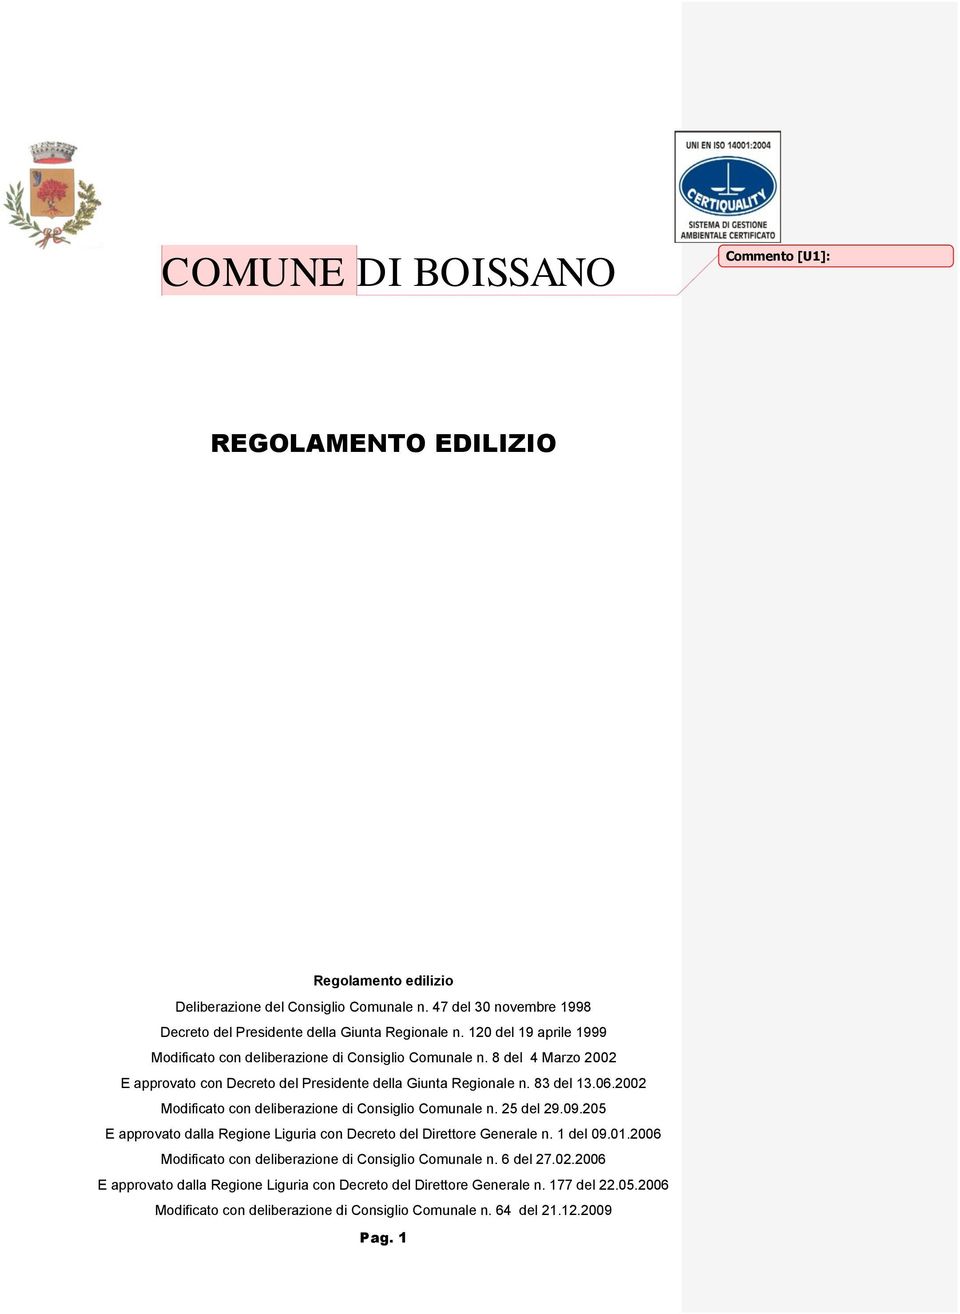 2002 Modificato con deliberazione di Consiglio Comunale n. 25 del 29.09.205 E approvato dalla Regione Liguria con Decreto del Direttore Generale n. del 09.0.2006 Modificato con deliberazione di Consiglio Comunale n.